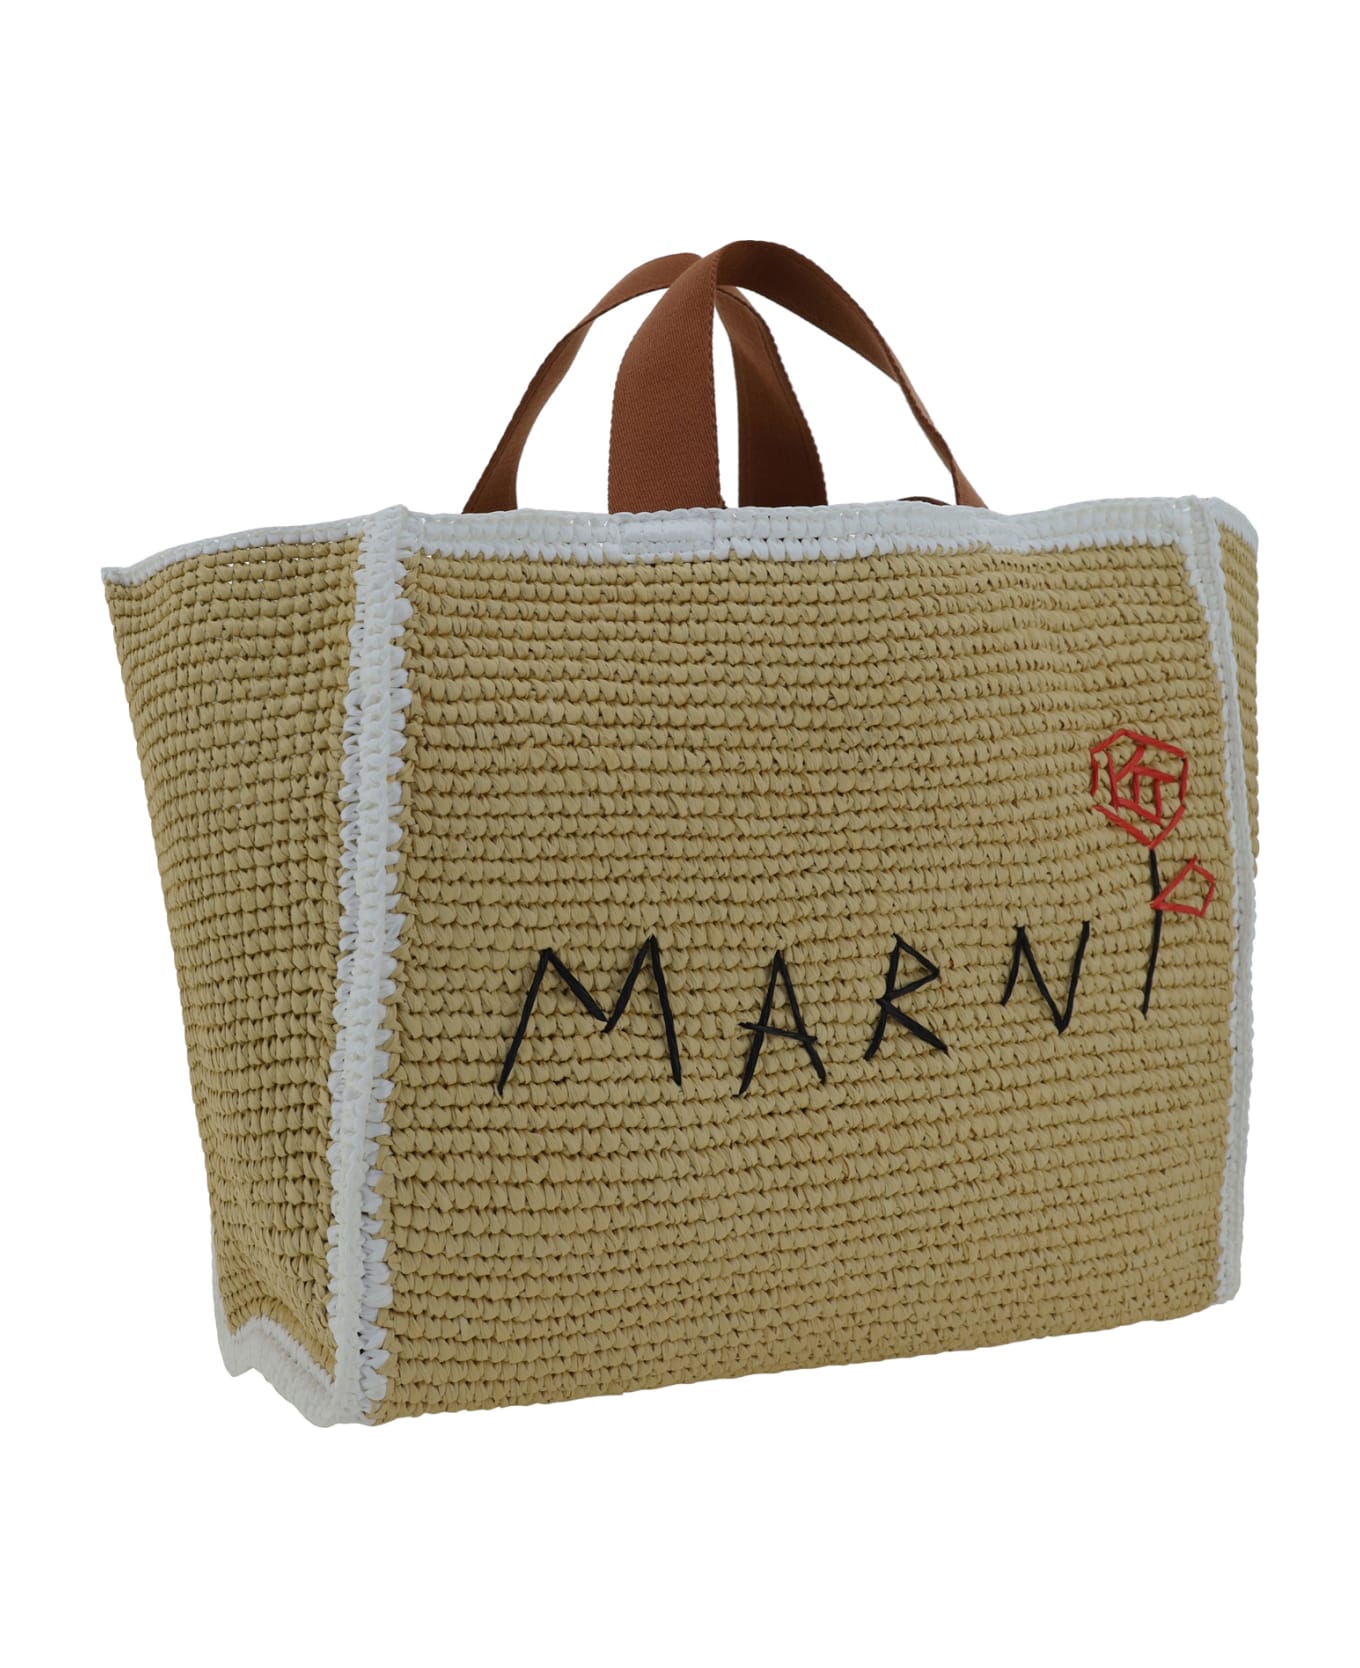 Marni Tote Sillo Medium Handbag - Natural